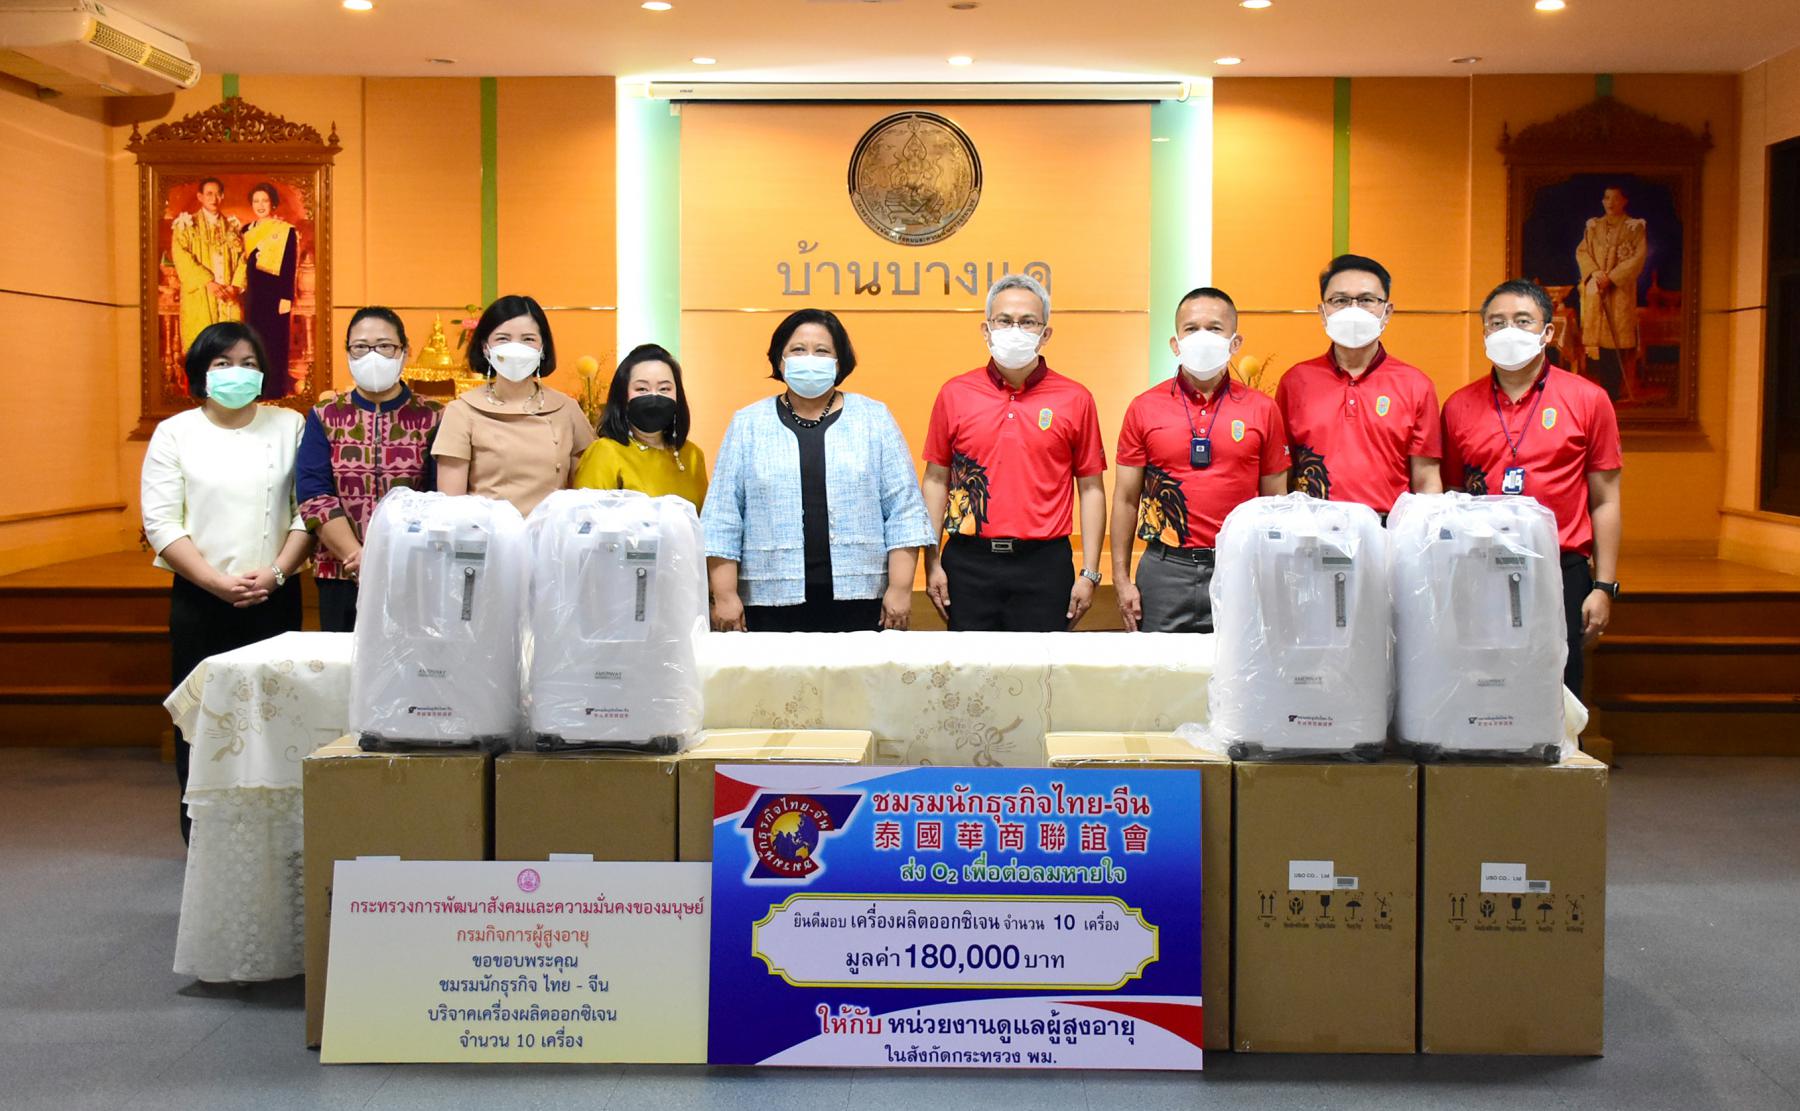 การรับมอบเครื่องผลิตออกซิเจน จำนวน 10 เครื่อง มูลค่า 180,000 บาท จากชมรมนักธุรกิจไทย-จีน นักศึกษาวิทยาลัยป้องกันราชอาณาจักร รุ่นที่ 63 หมู่สิงโต